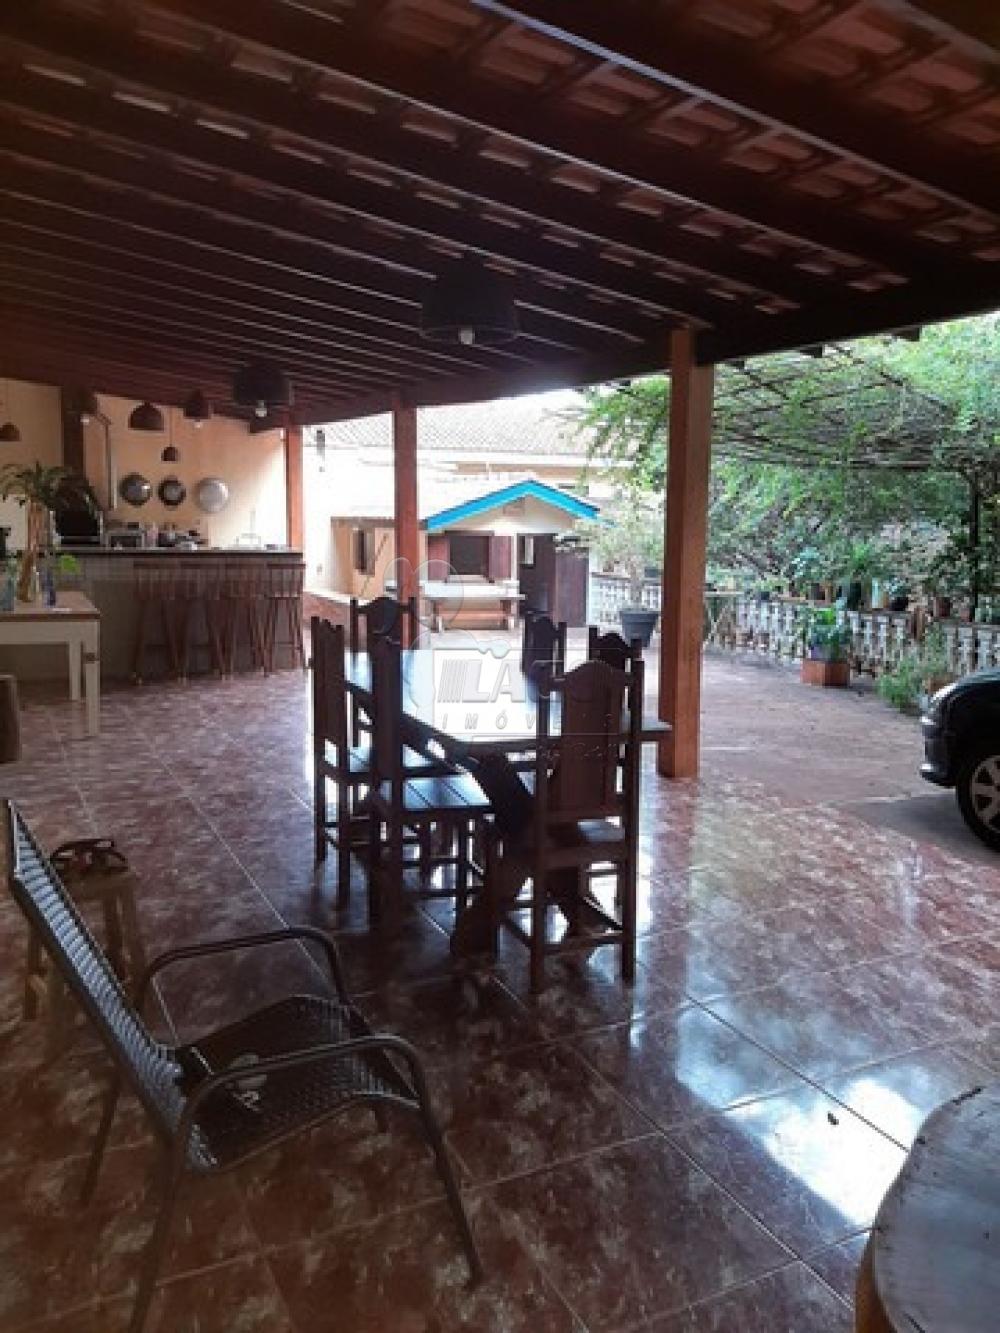 Comprar Casas / Condomínio em Ribeirão Preto R$ 680.000,00 - Foto 8